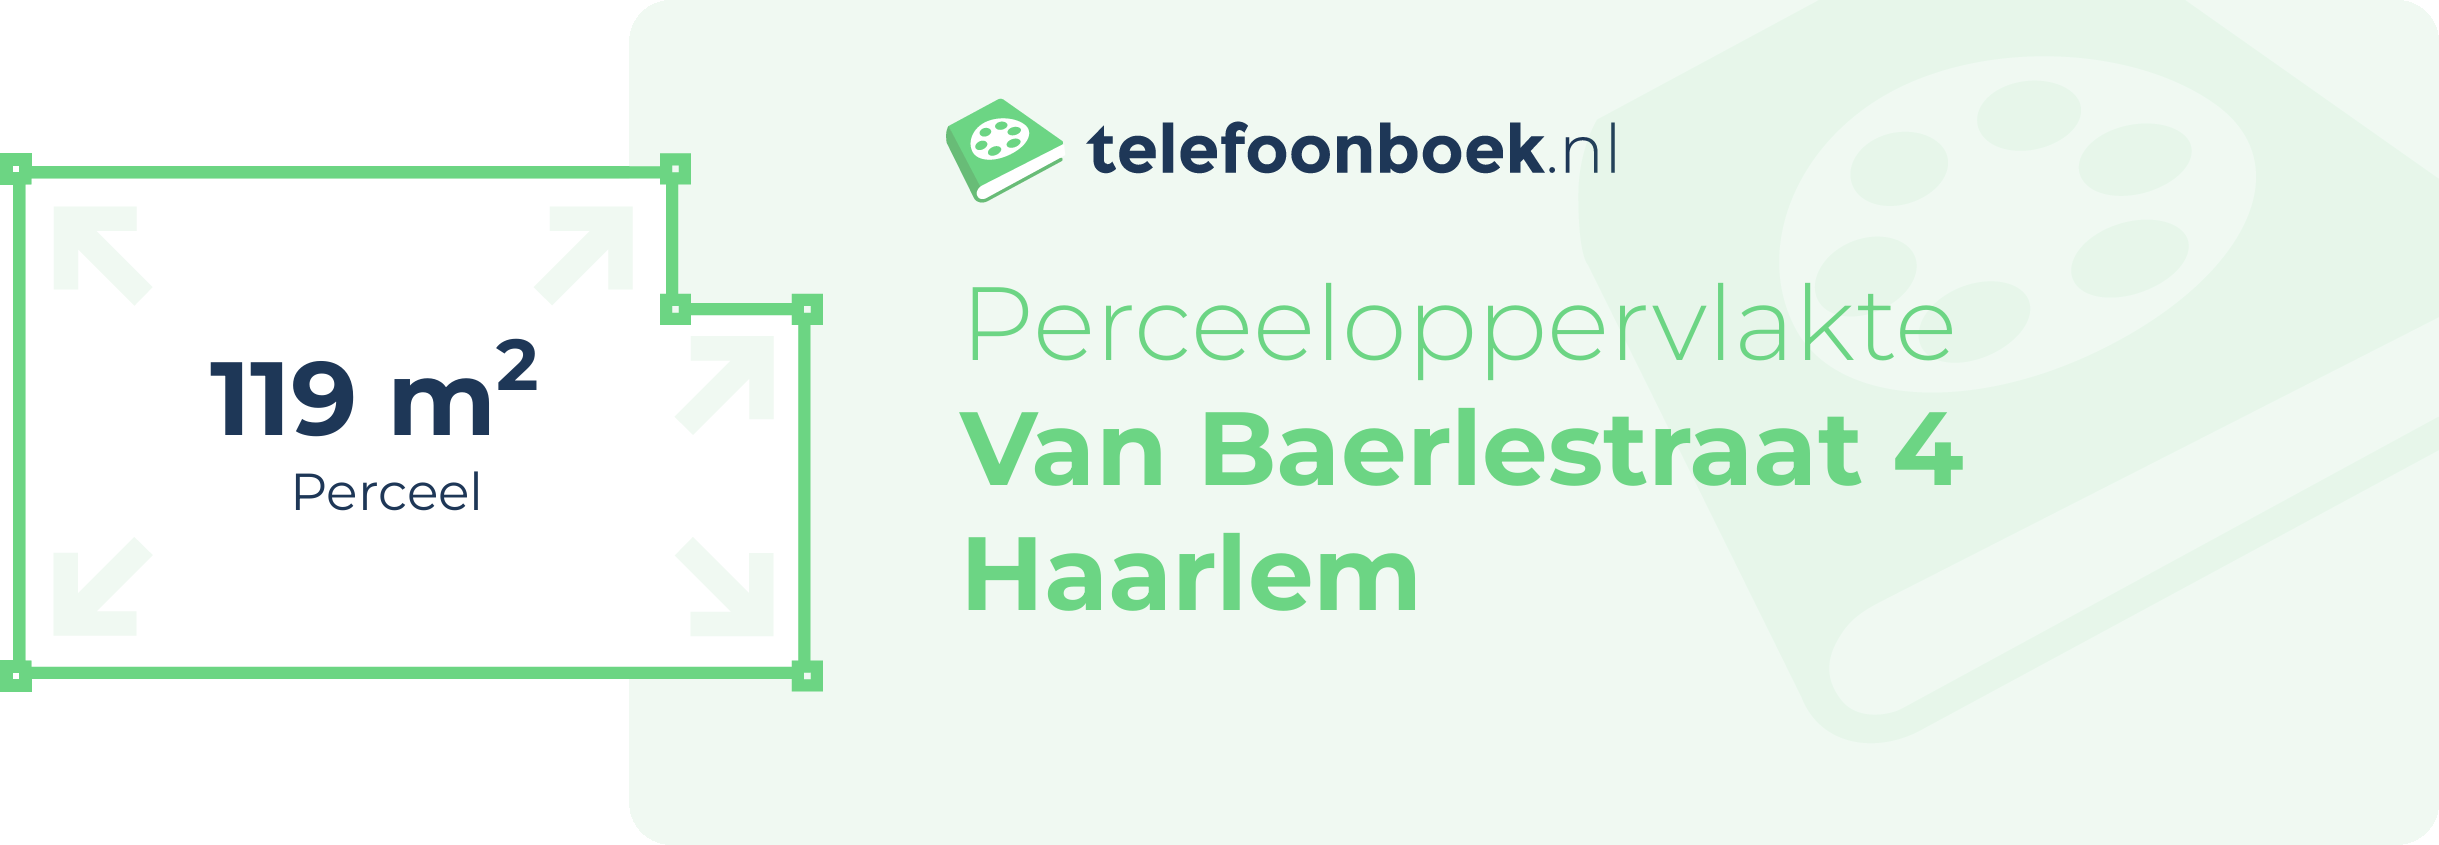 Perceeloppervlakte Van Baerlestraat 4 Haarlem